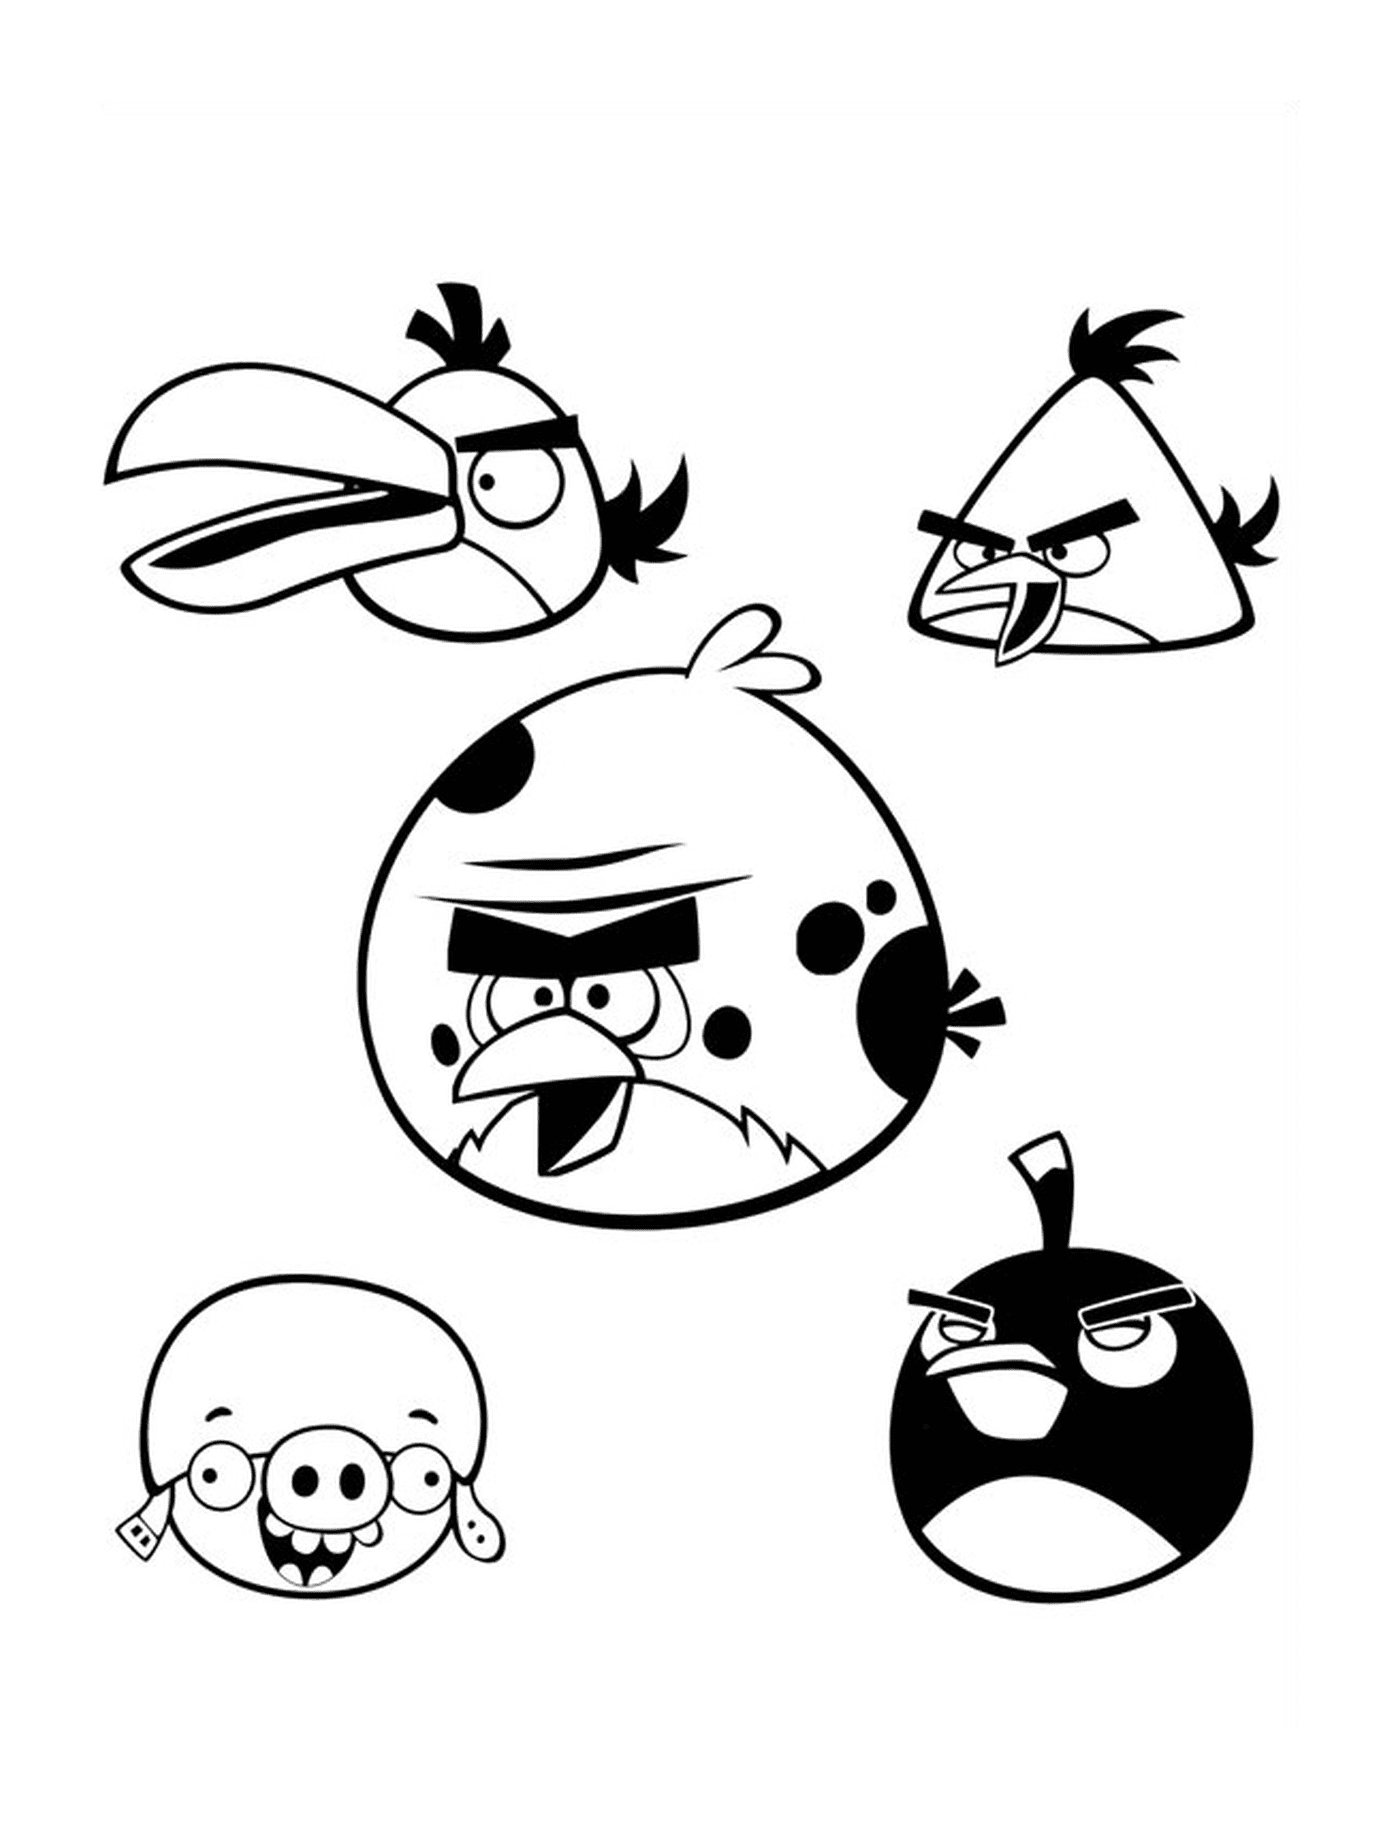  Team von fünf Angry Birds in der Luft 